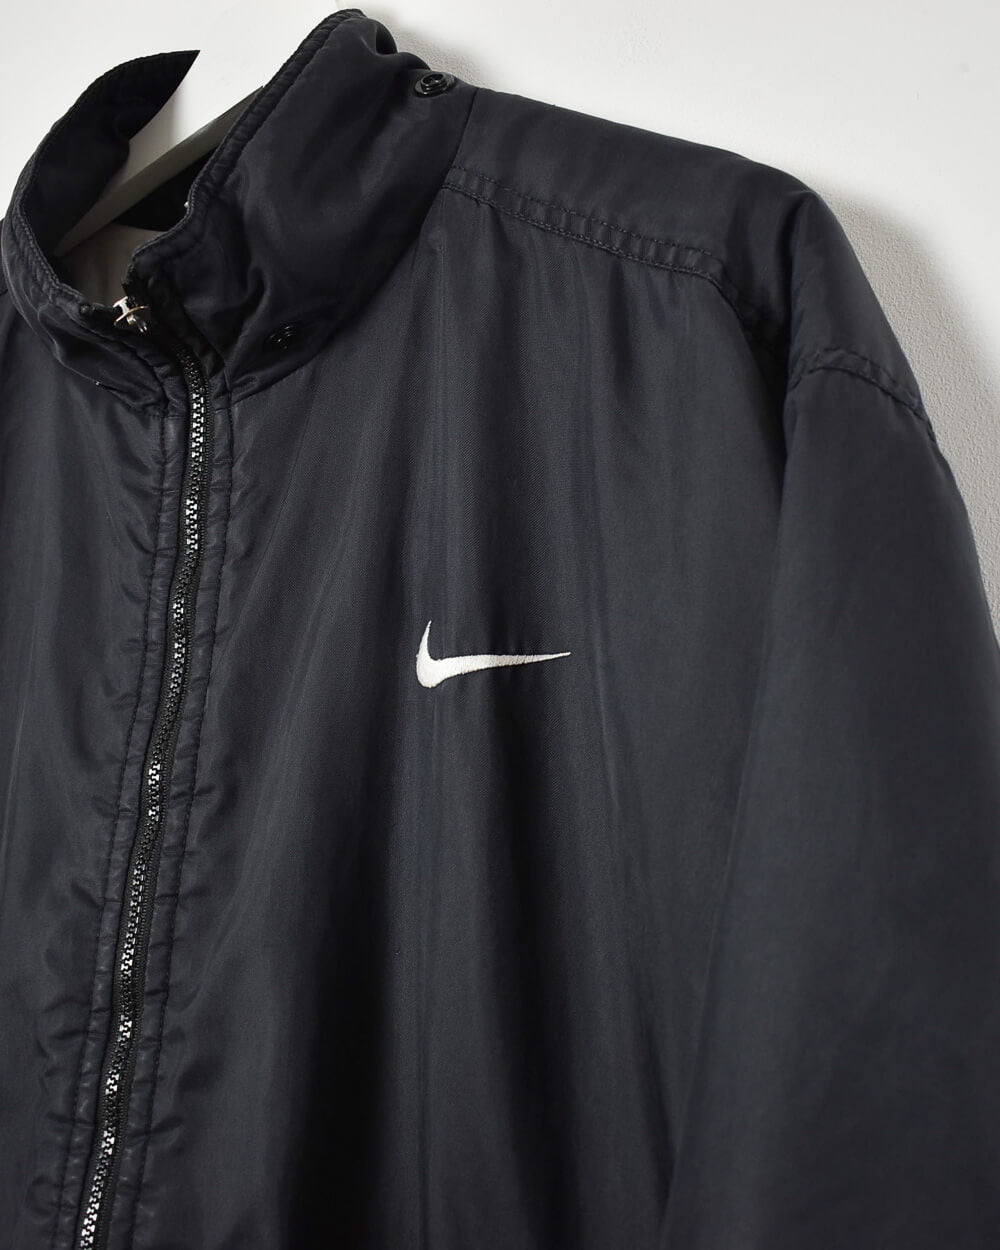 Black Nike Winter Coat - Medium